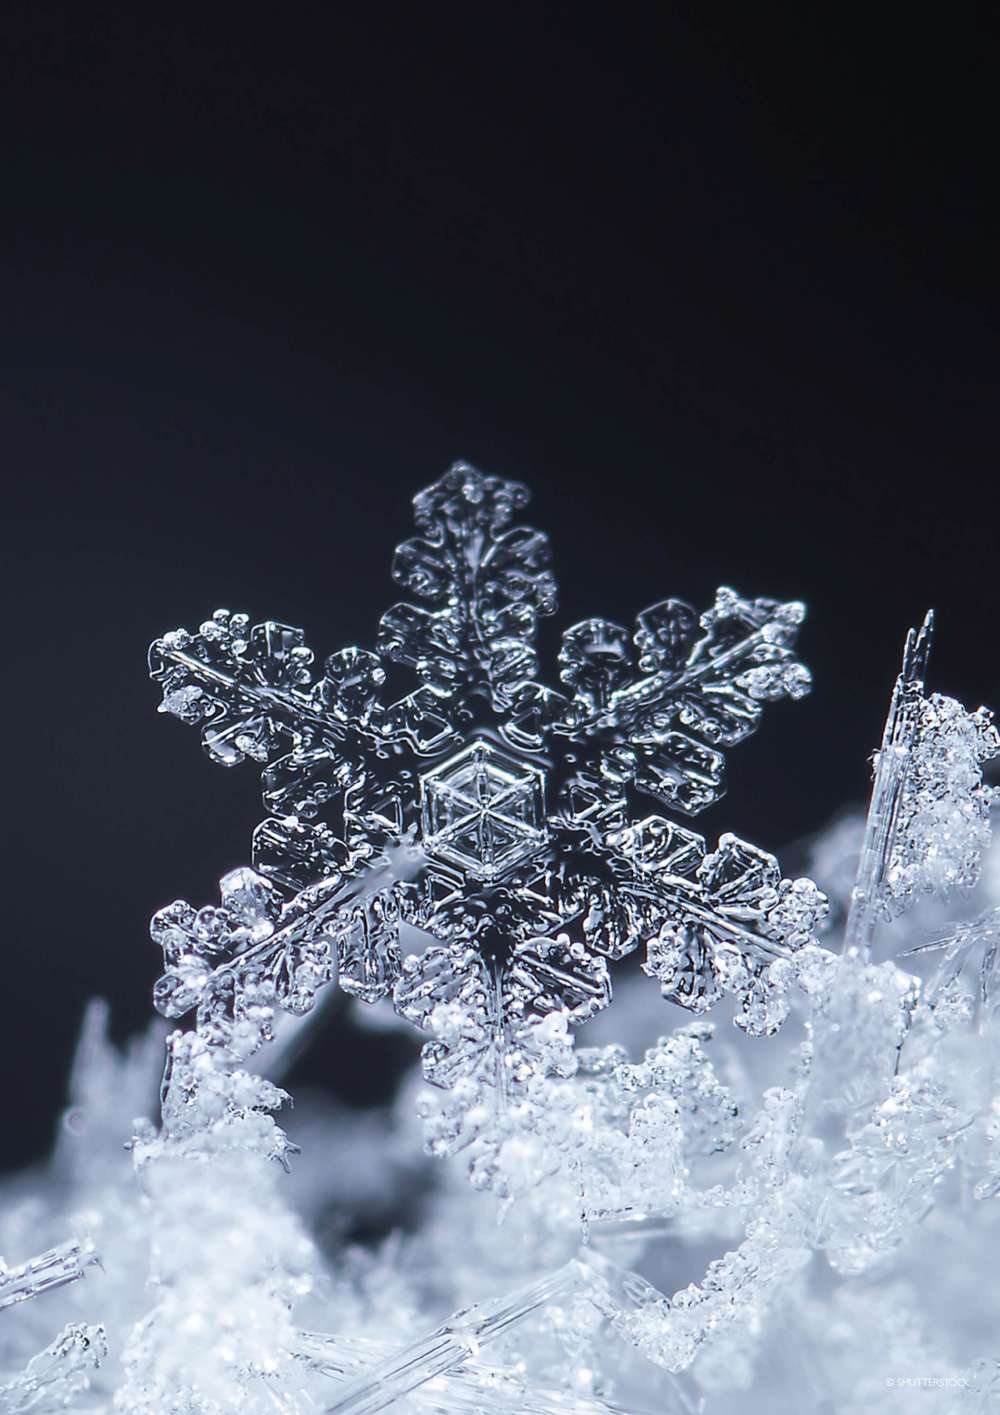 Stunning snowflake